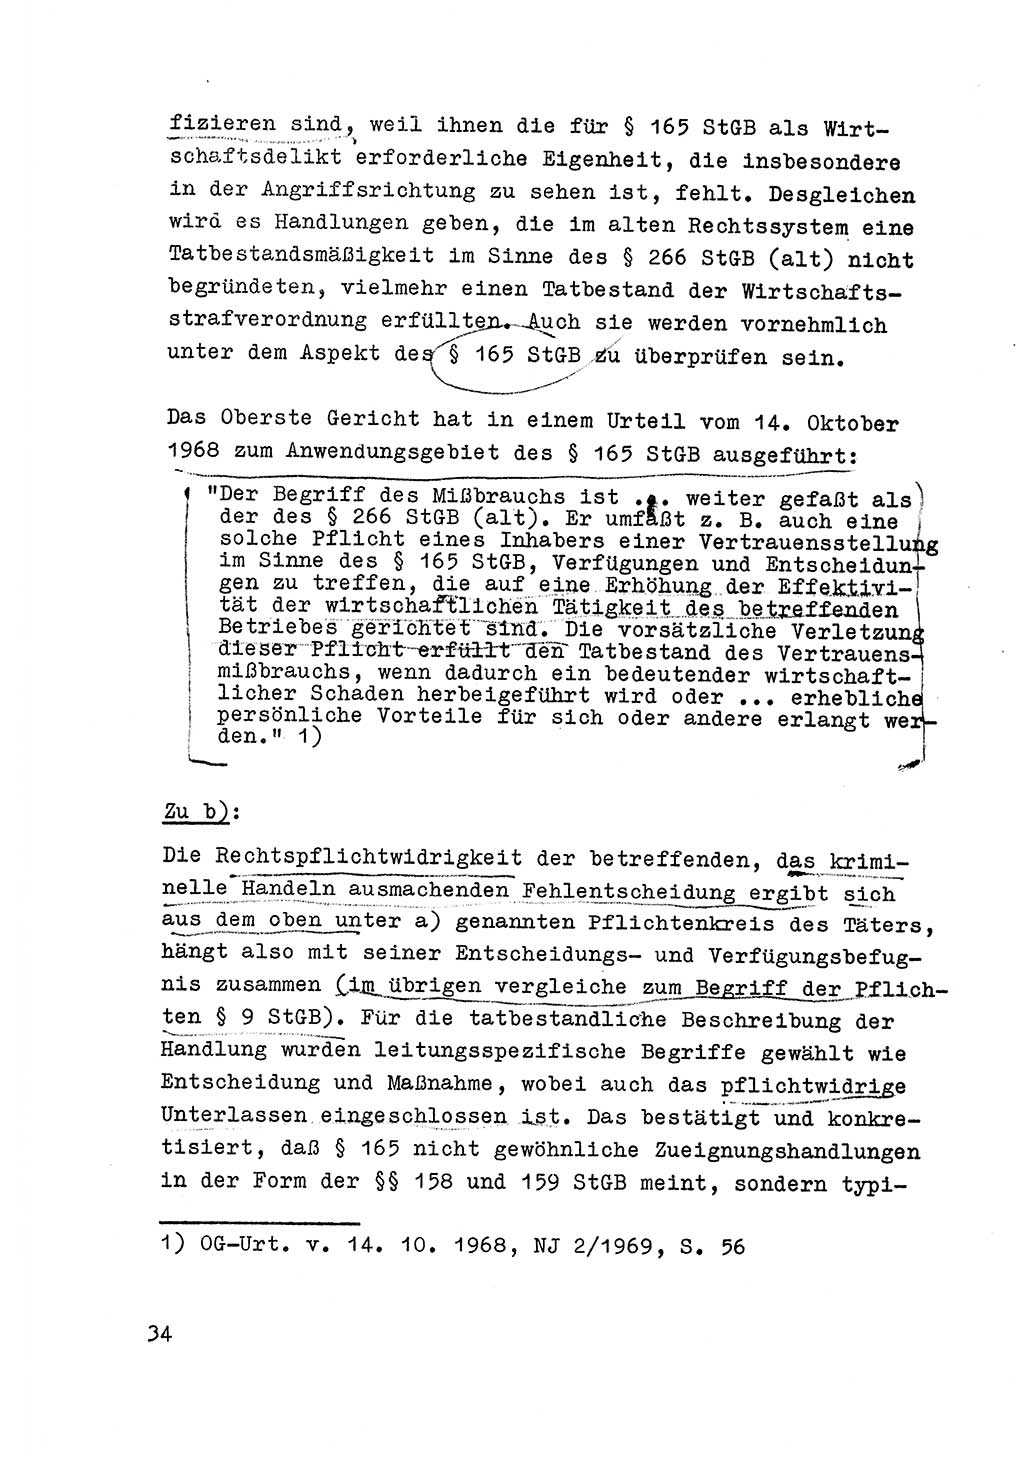 Strafrecht der DDR (Deutsche Demokratische Republik), Besonderer Teil, Lehrmaterial, Heft 6 1970, Seite 34 (Strafr. DDR BT Lehrmat. H. 6 1970, S. 34)